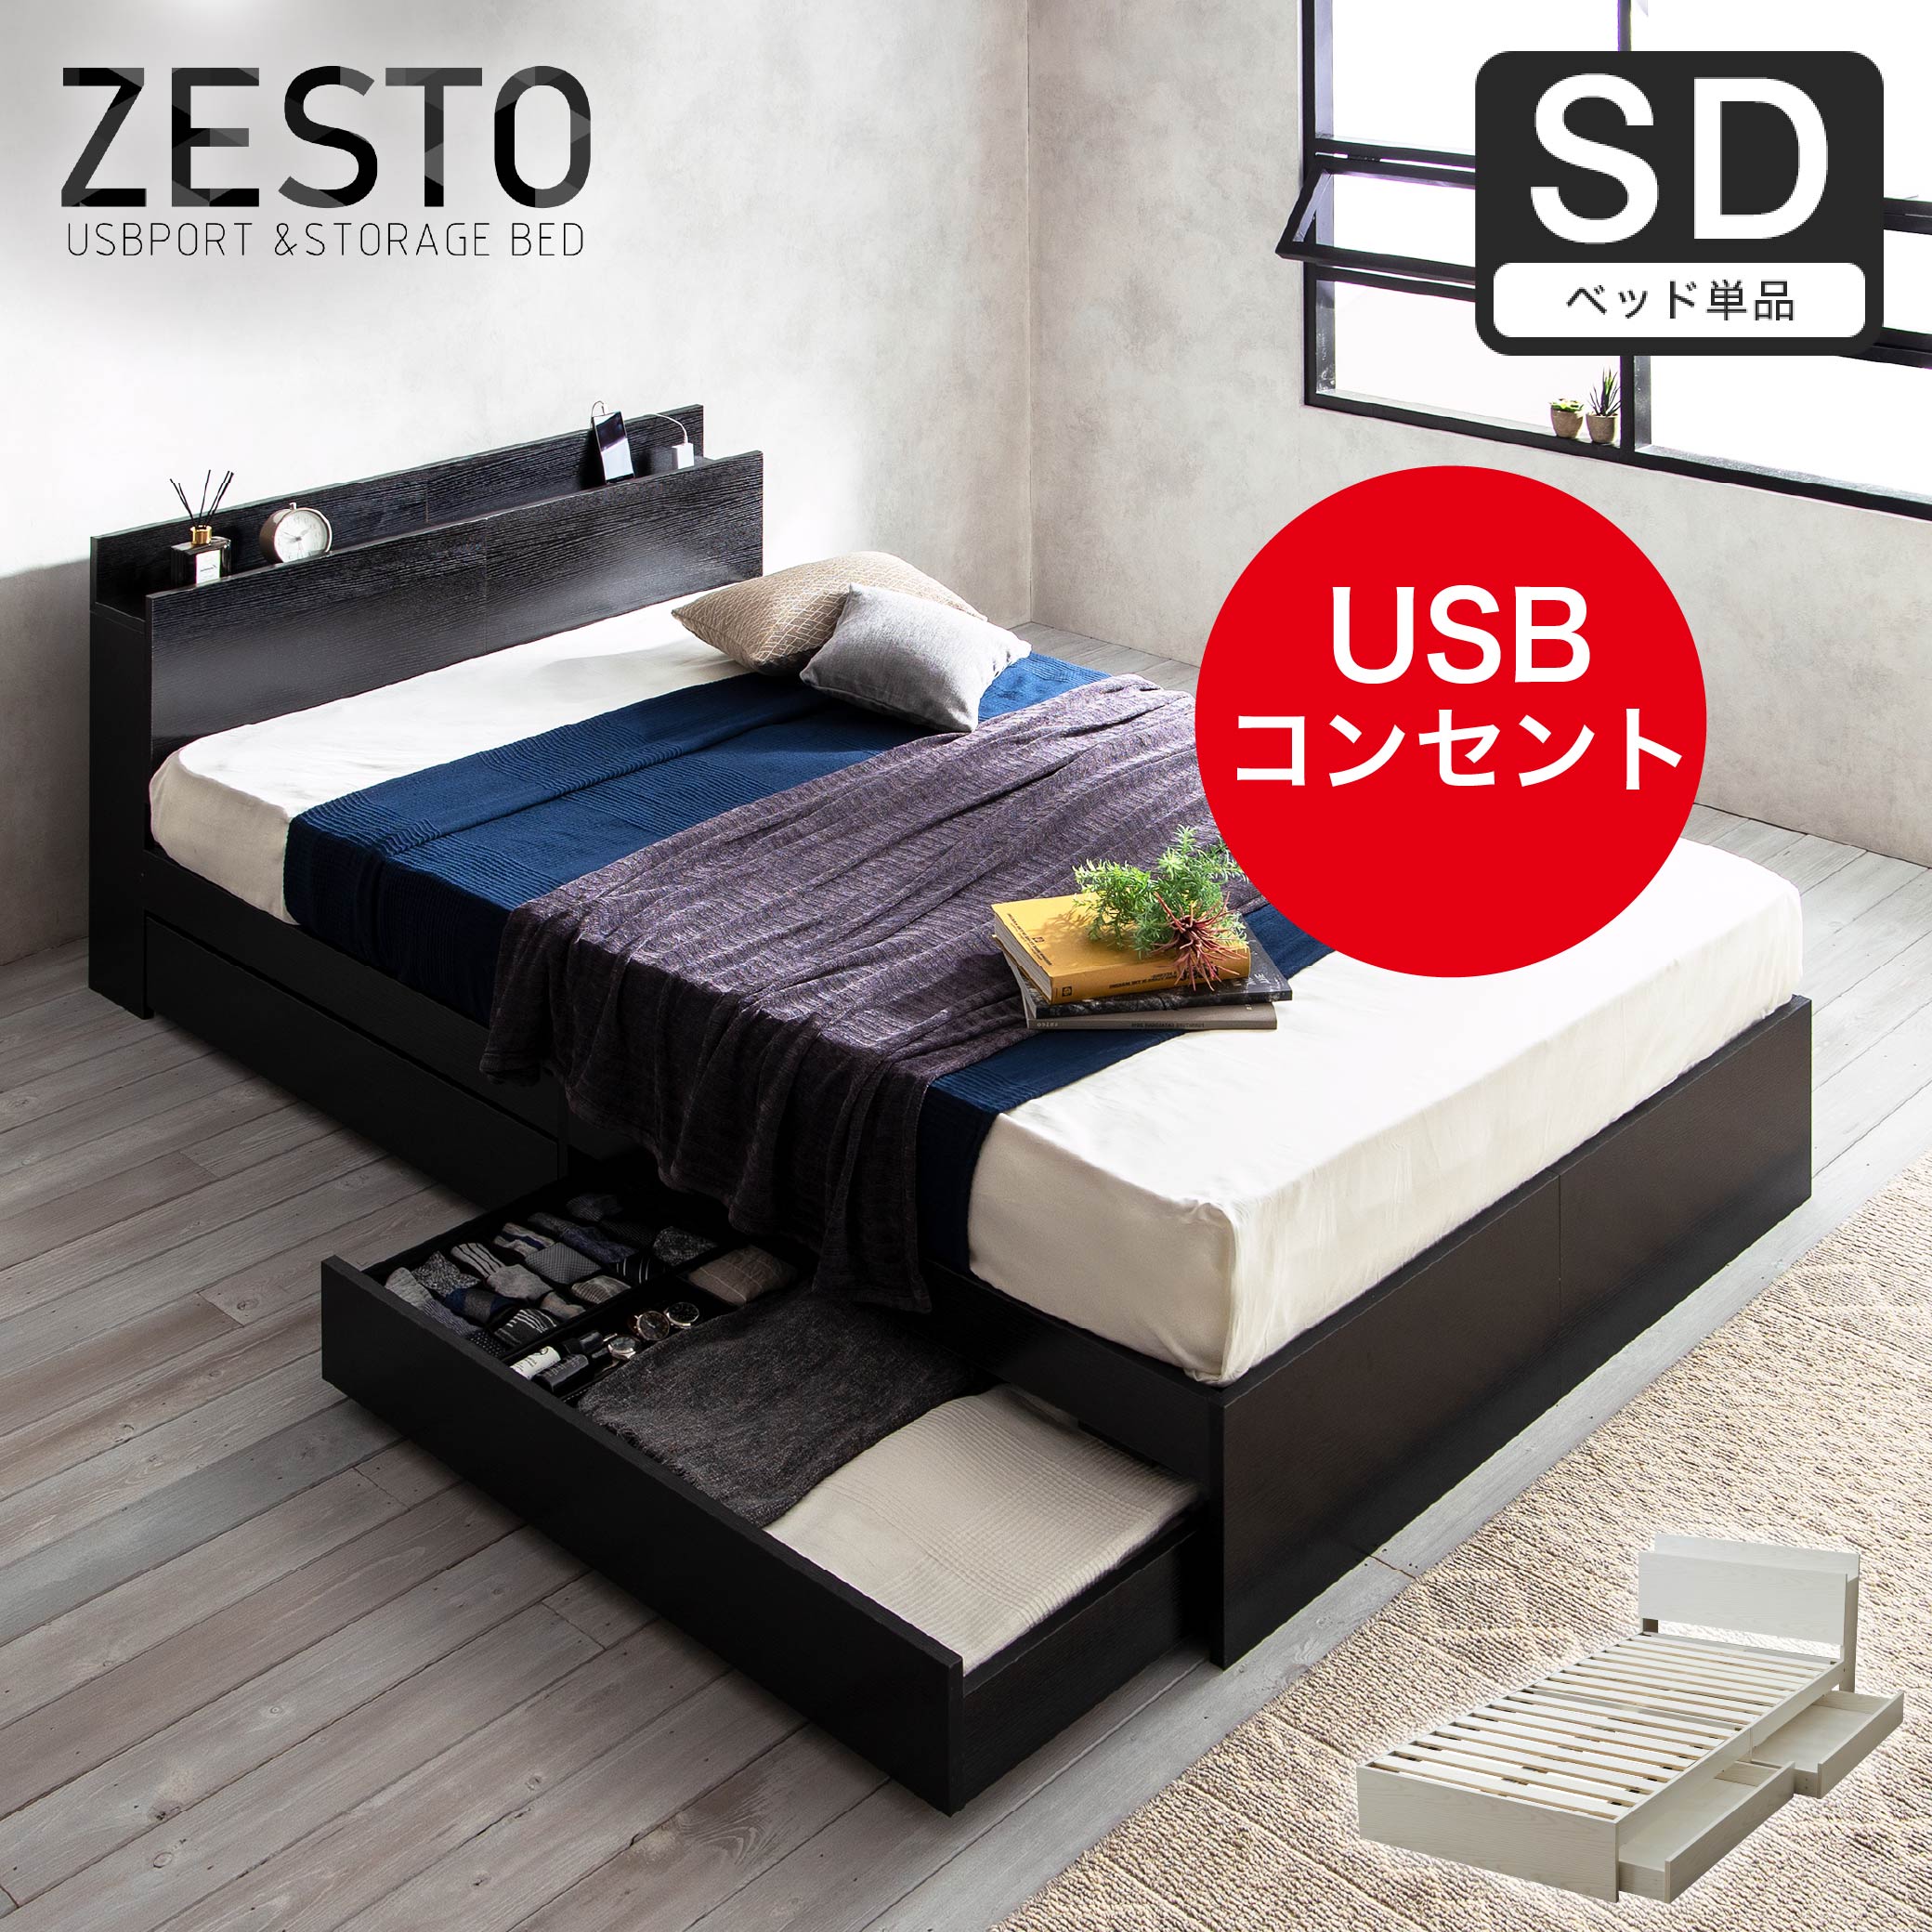 ベッド 収納 セミダブルベッド フレームのみ 収納付き USBコンセント付き zesto ゼスト セミダブル すのこベッド 引き出し付きベッド  zesto 木製ベッド